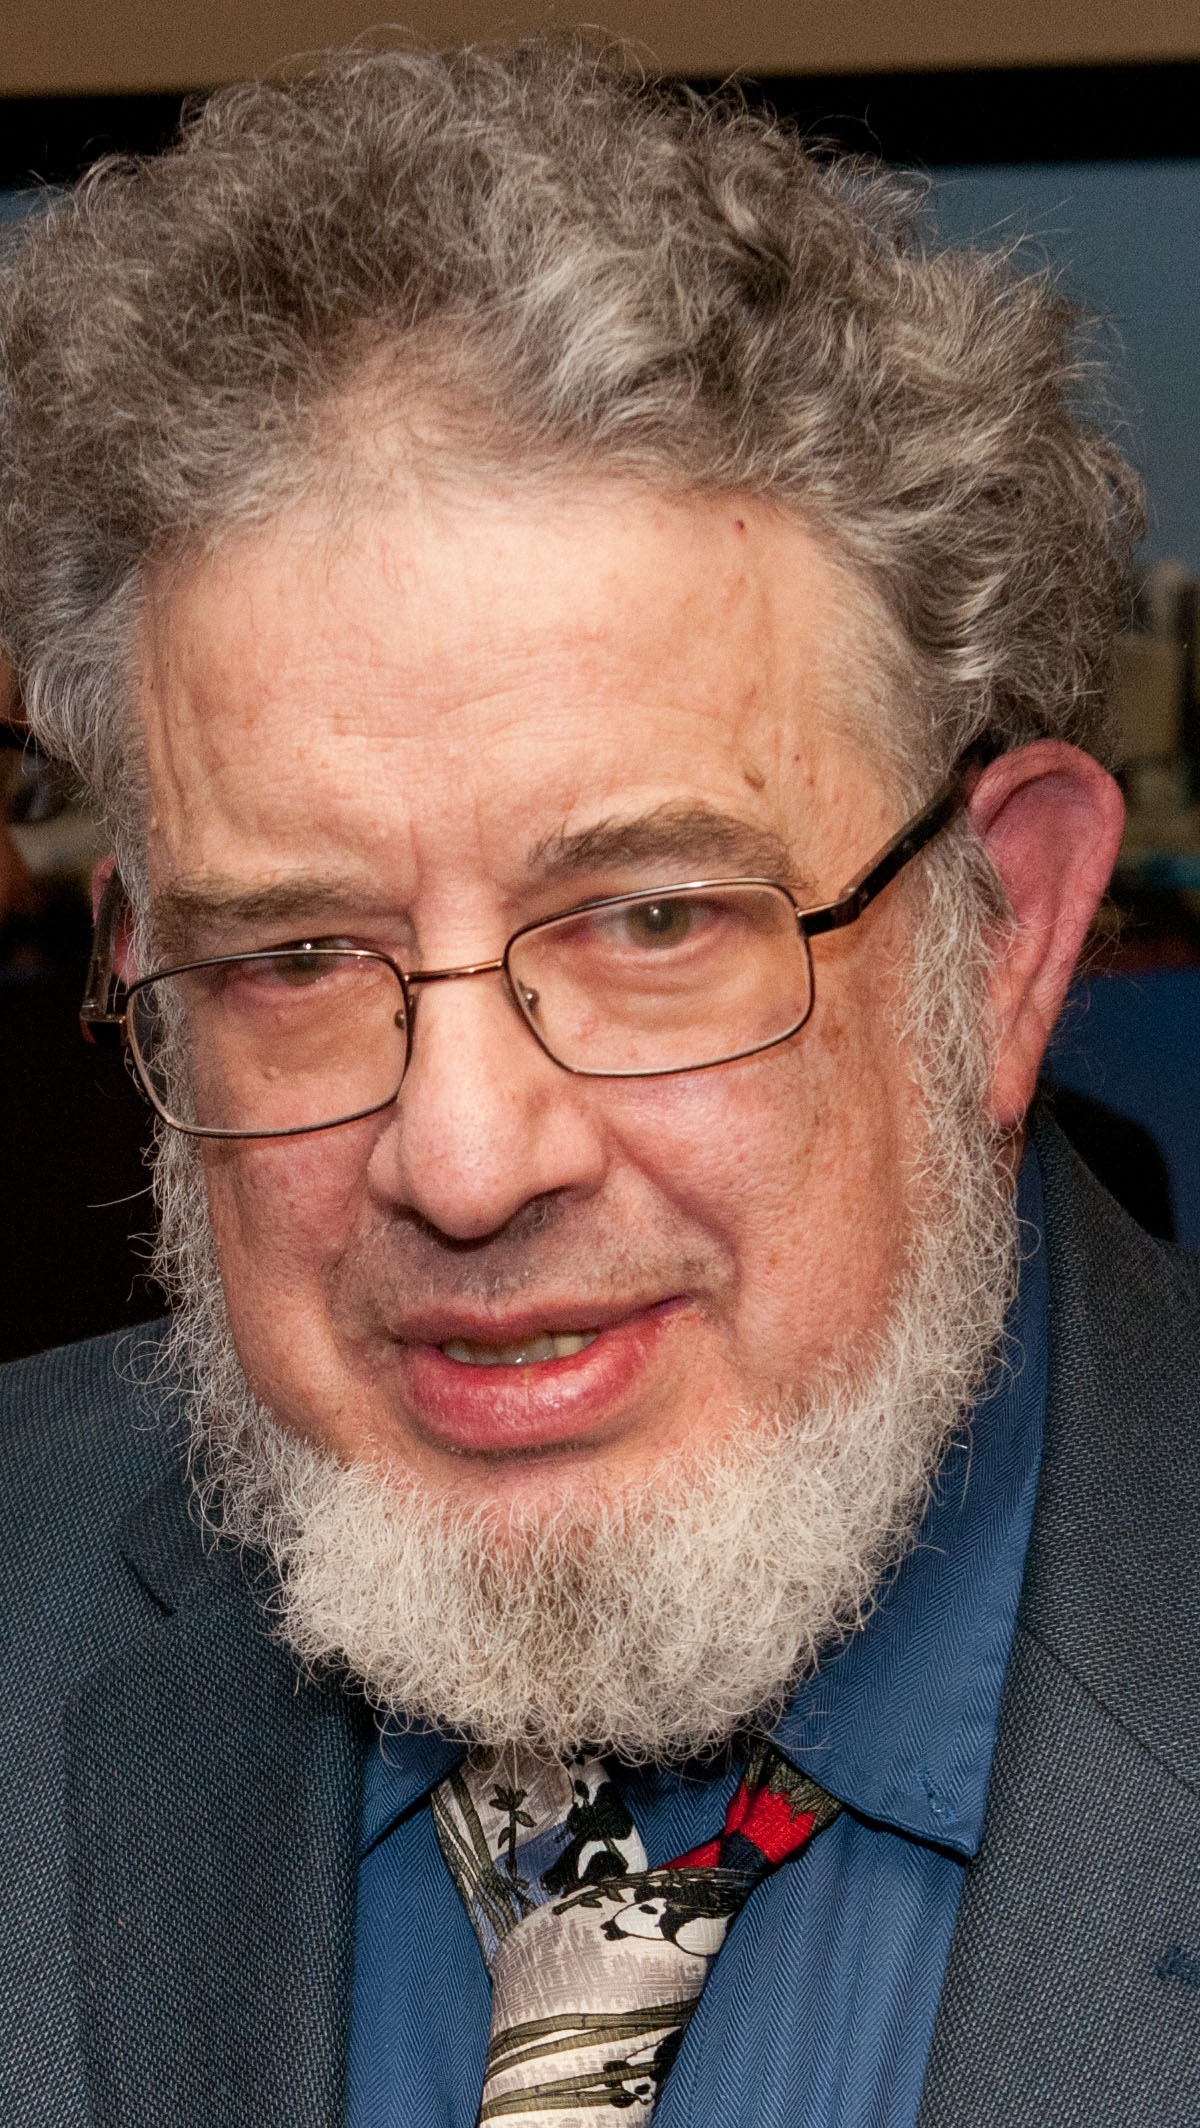 Professor Emeritus Lowell Schechter